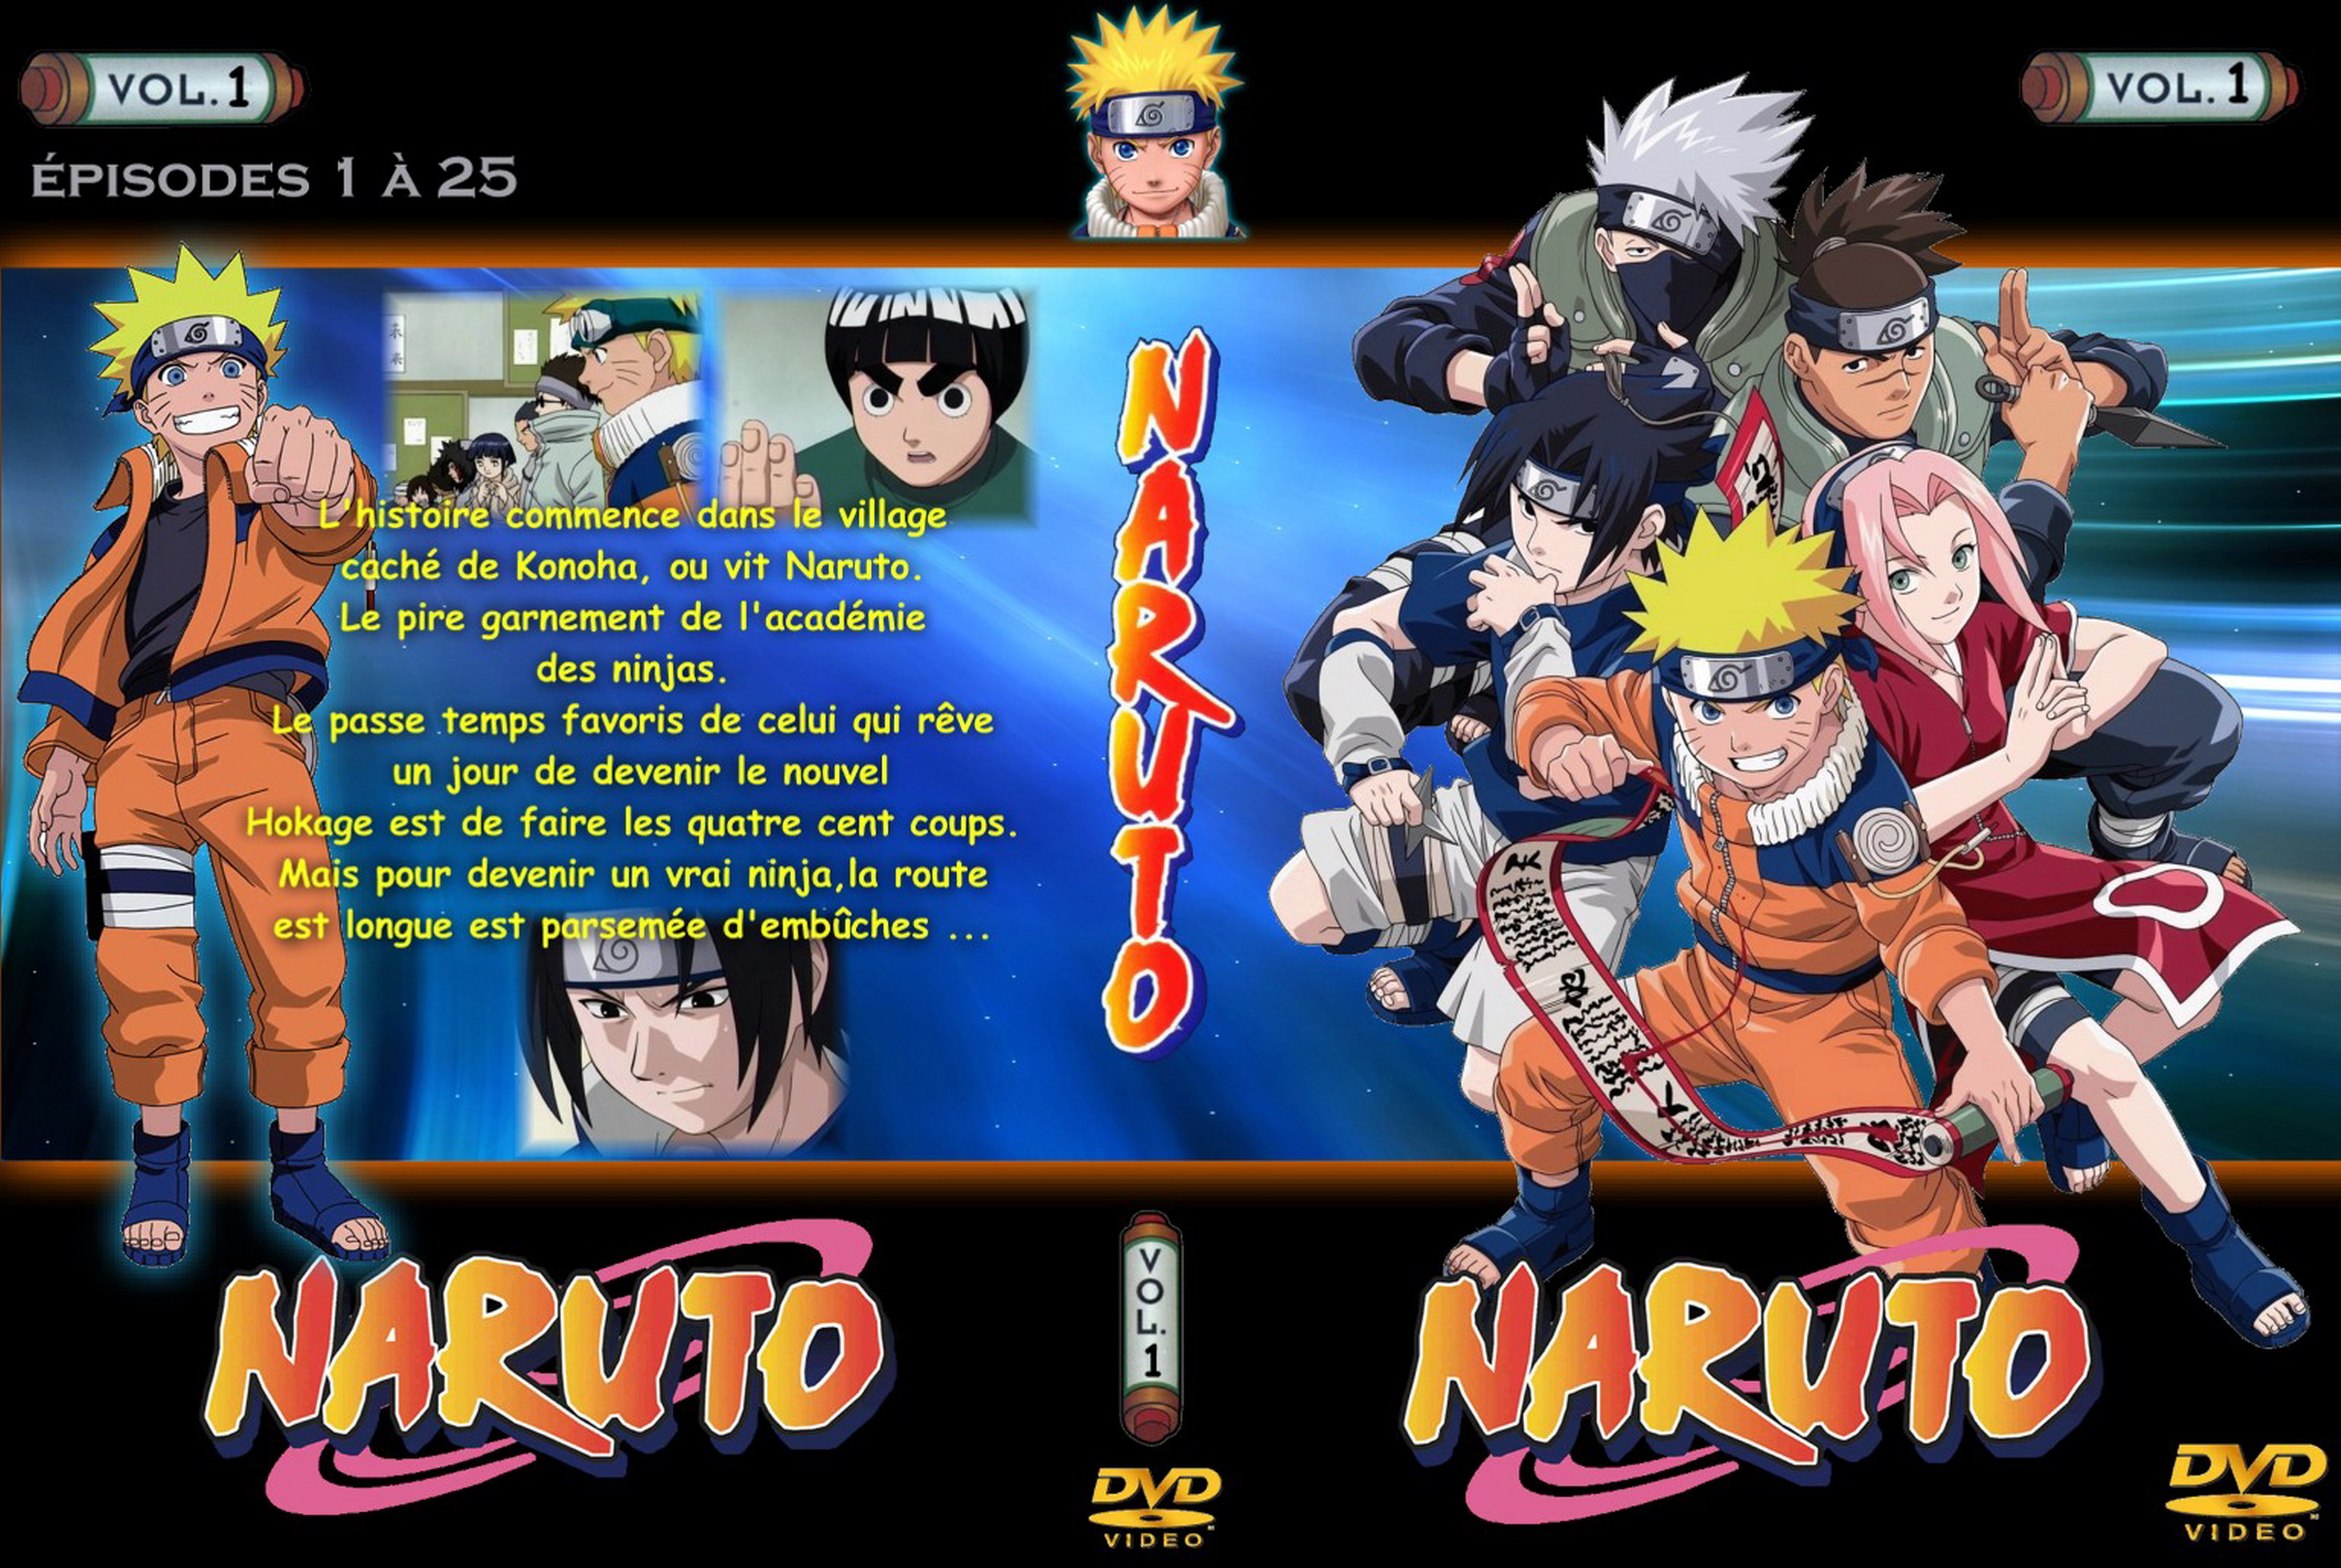 Jaquette DVD Naruto vol 01 v2